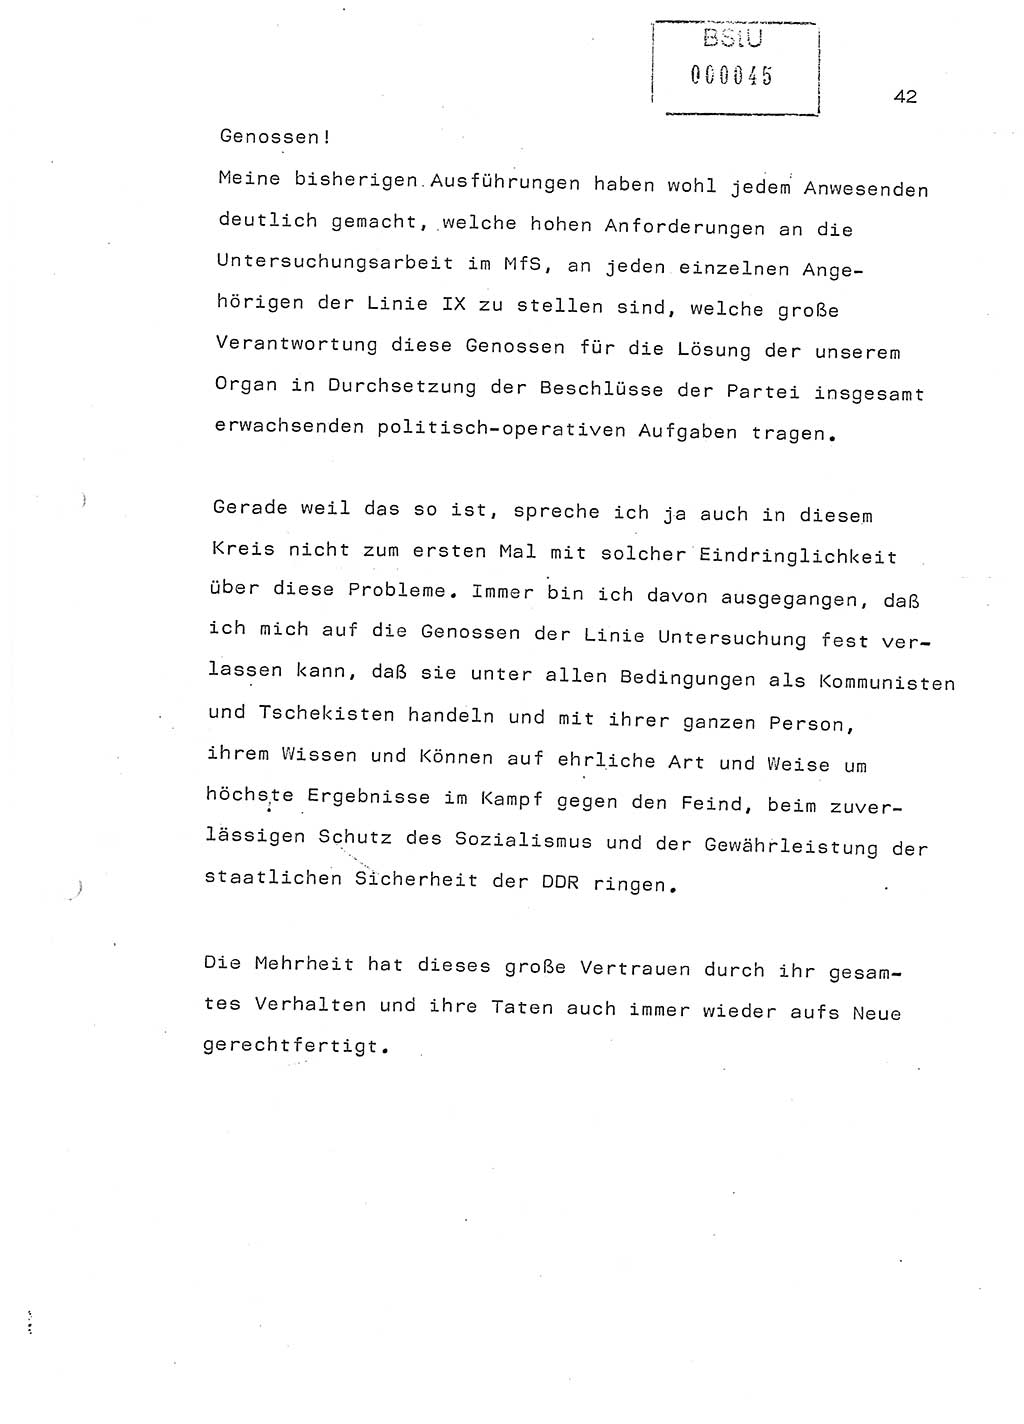 Referat (Generaloberst Erich Mielke) auf der Zentralen Dienstkonferenz am 24.5.1979 [Ministerium für Staatssicherheit (MfS), Deutsche Demokratische Republik (DDR), Der Minister], Berlin 1979, Seite 42 (Ref. DK DDR MfS Min. /79 1979, S. 42)